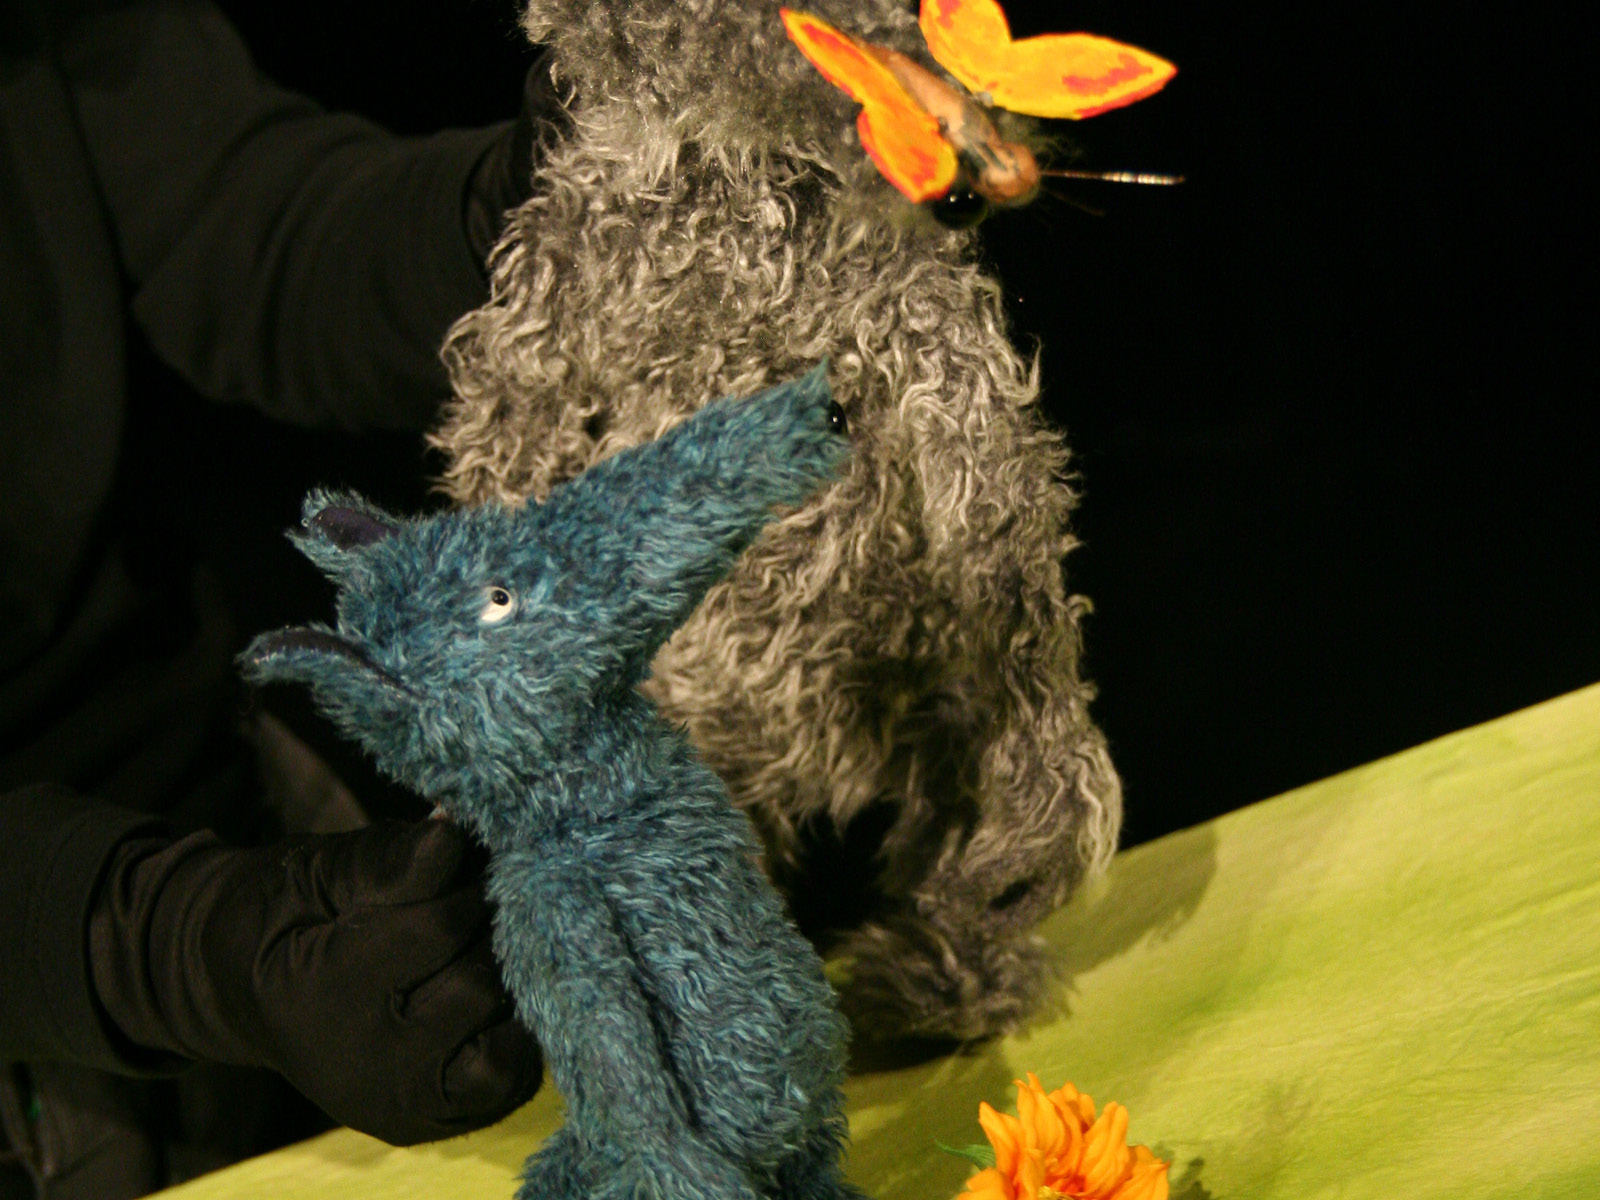 Der kuschelige blaue Wolf betrachtet einen vor ihm flatternden Schmetterling, während er auf einer grünen Stoffwiese mit orangener, vielblättriger Blume sitzt.